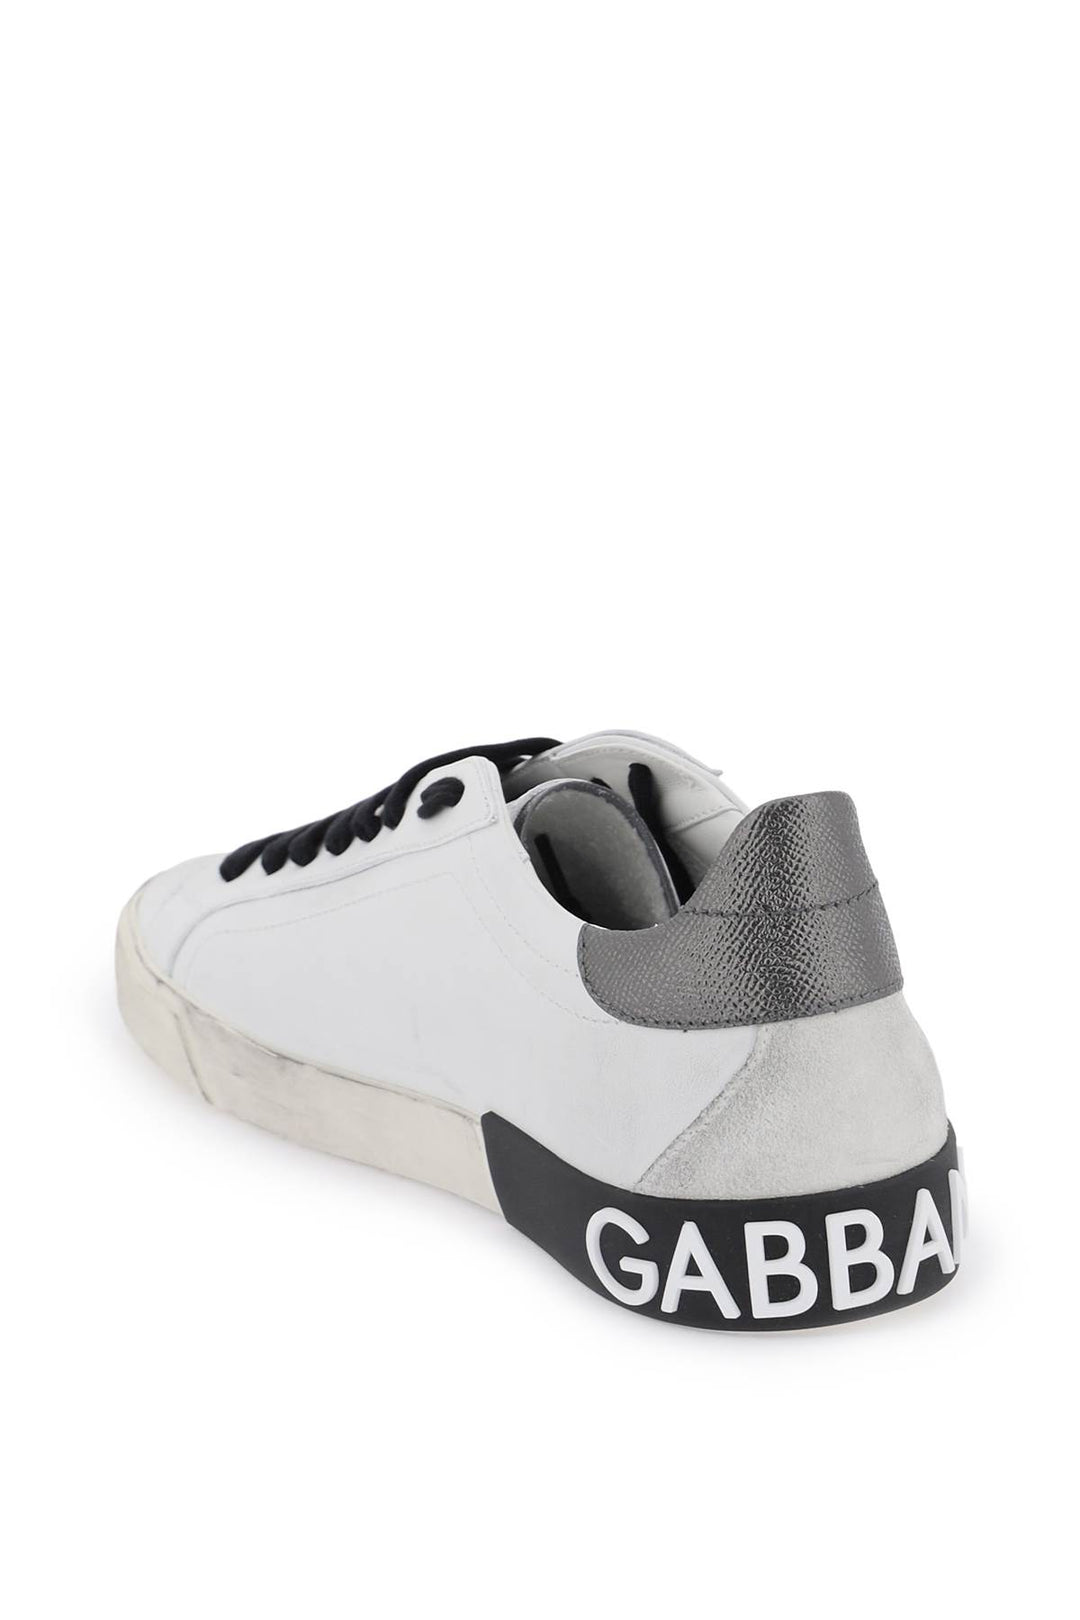 Sneakers 'Portofino' - Dolce & Gabbana - Uomo